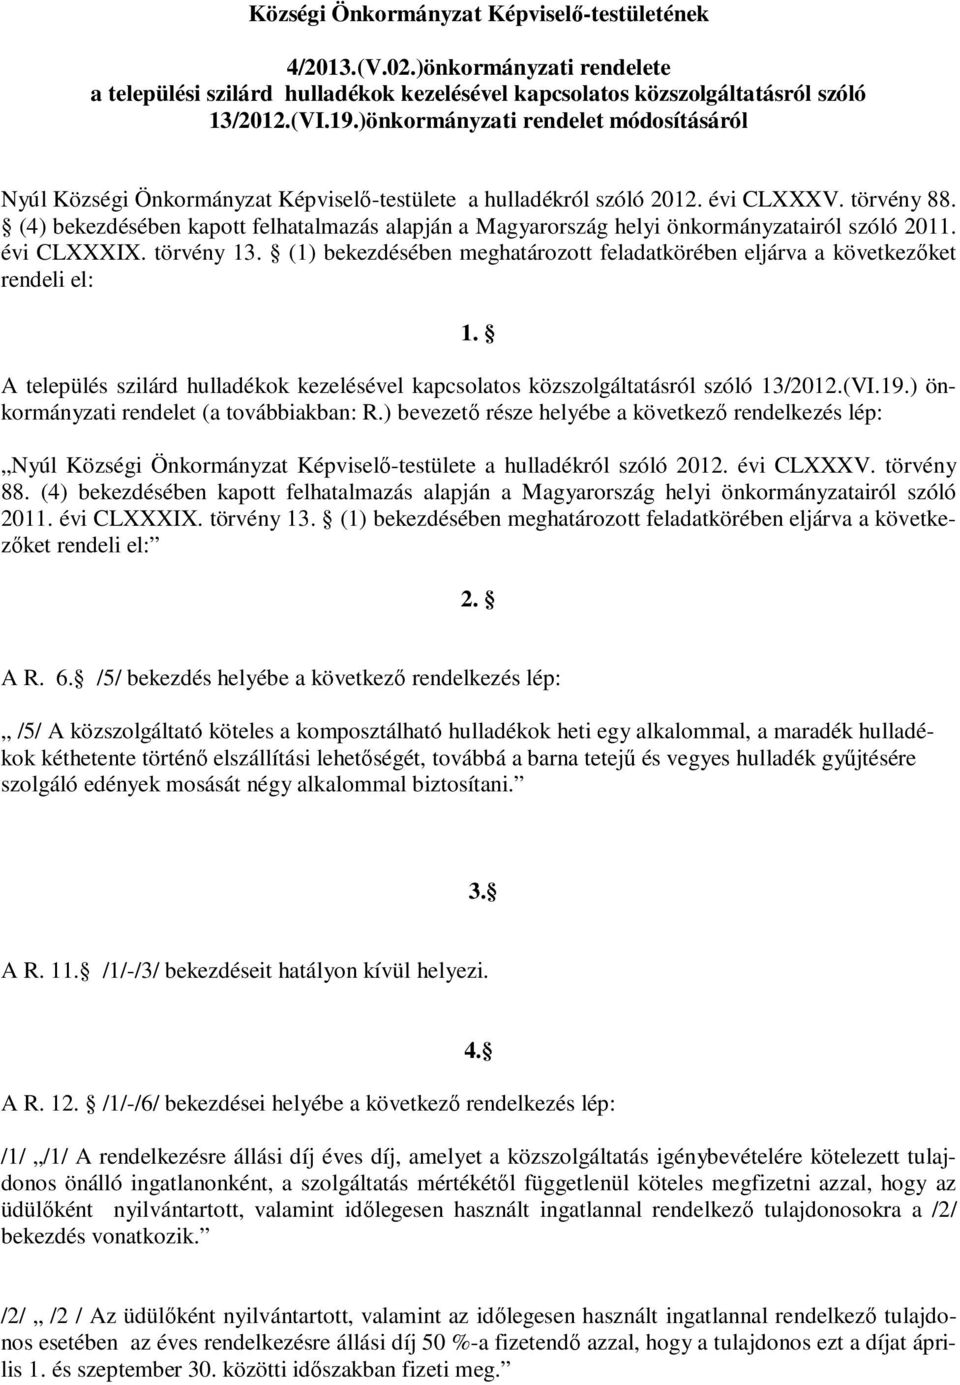 (4) bekezdésében kapott felhatalmazás alapján a Magyarország helyi önkormányzatairól szóló 2011. évi CLXXXIX. törvény 13.